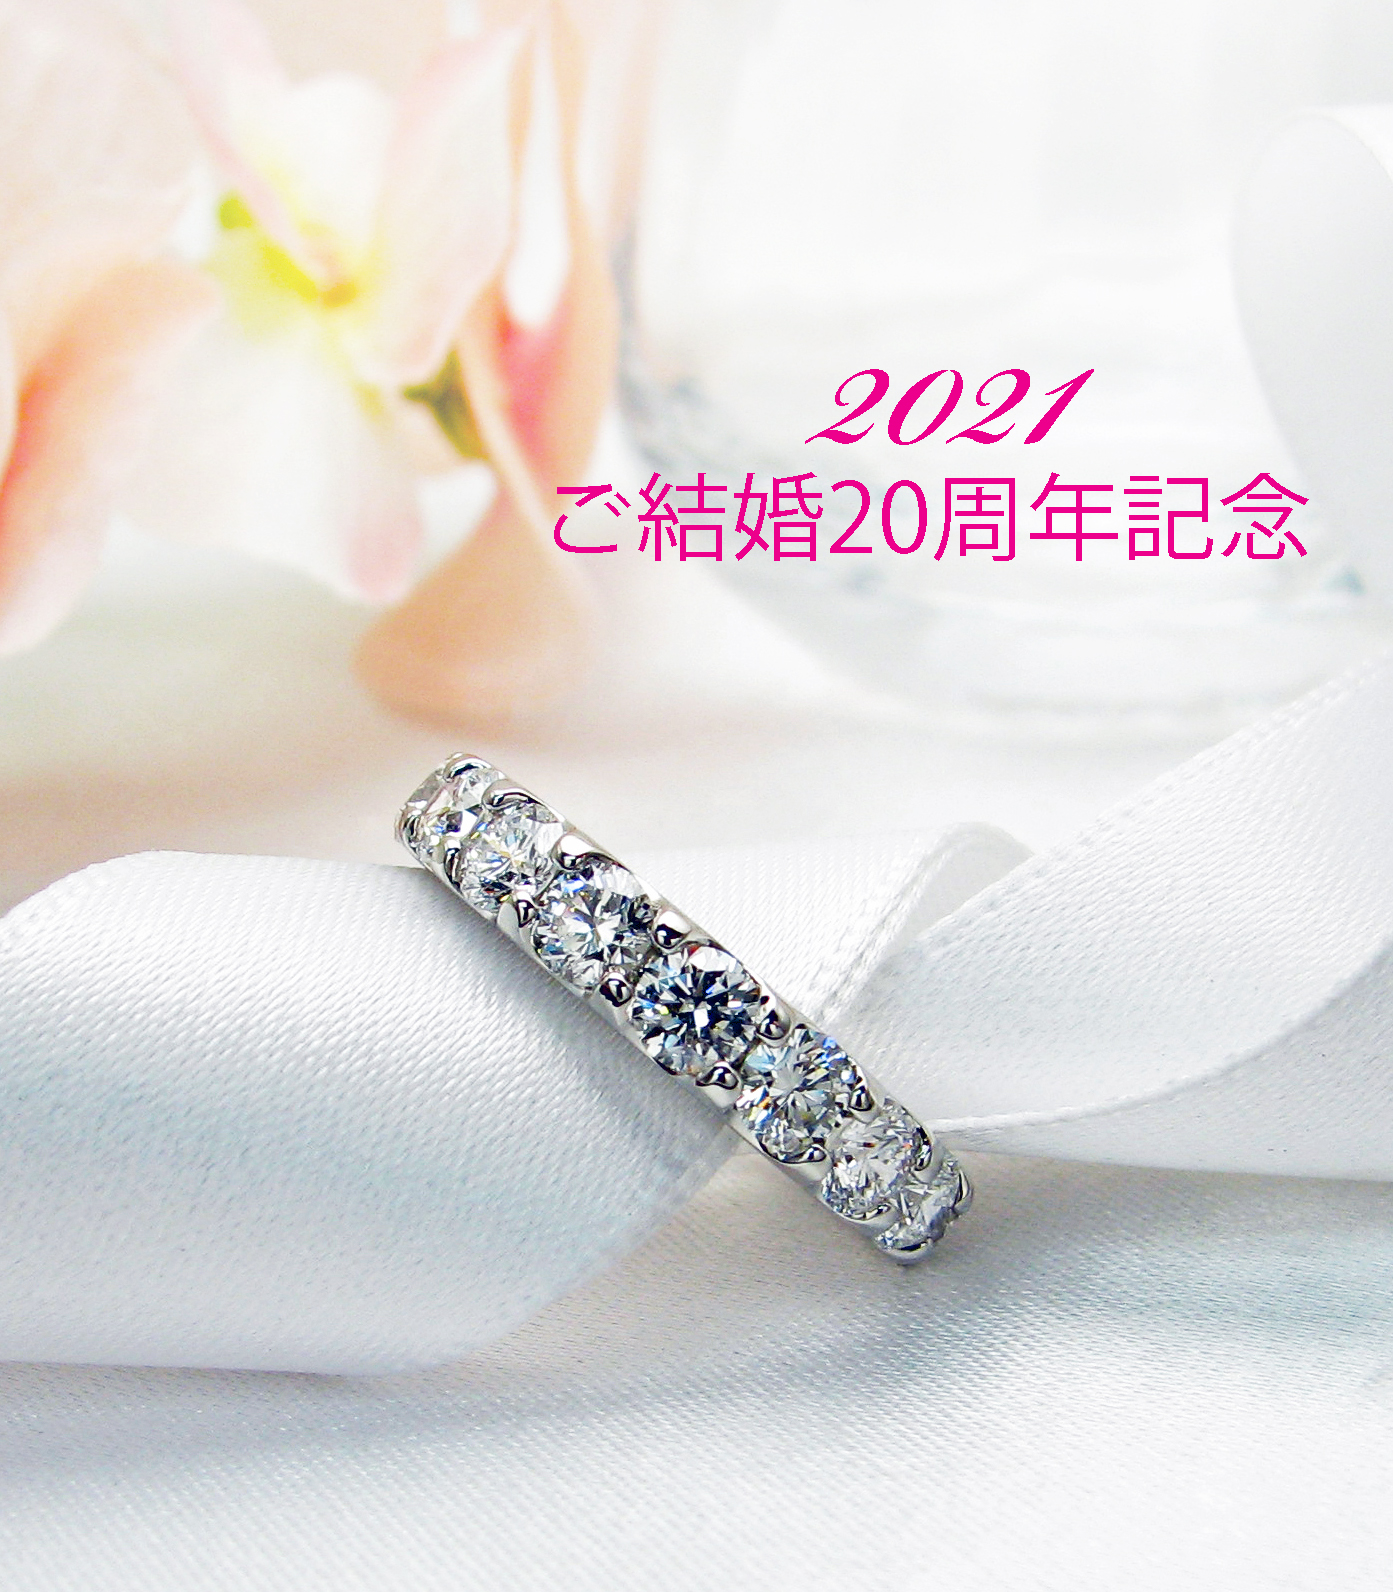 熊本県にお住まいお客様よりご結婚周年記念ジュエリーをご注文頂きました 京都で婚約指輪 結婚指輪 ダイヤモンドが卸価格で安い レハイム京都店